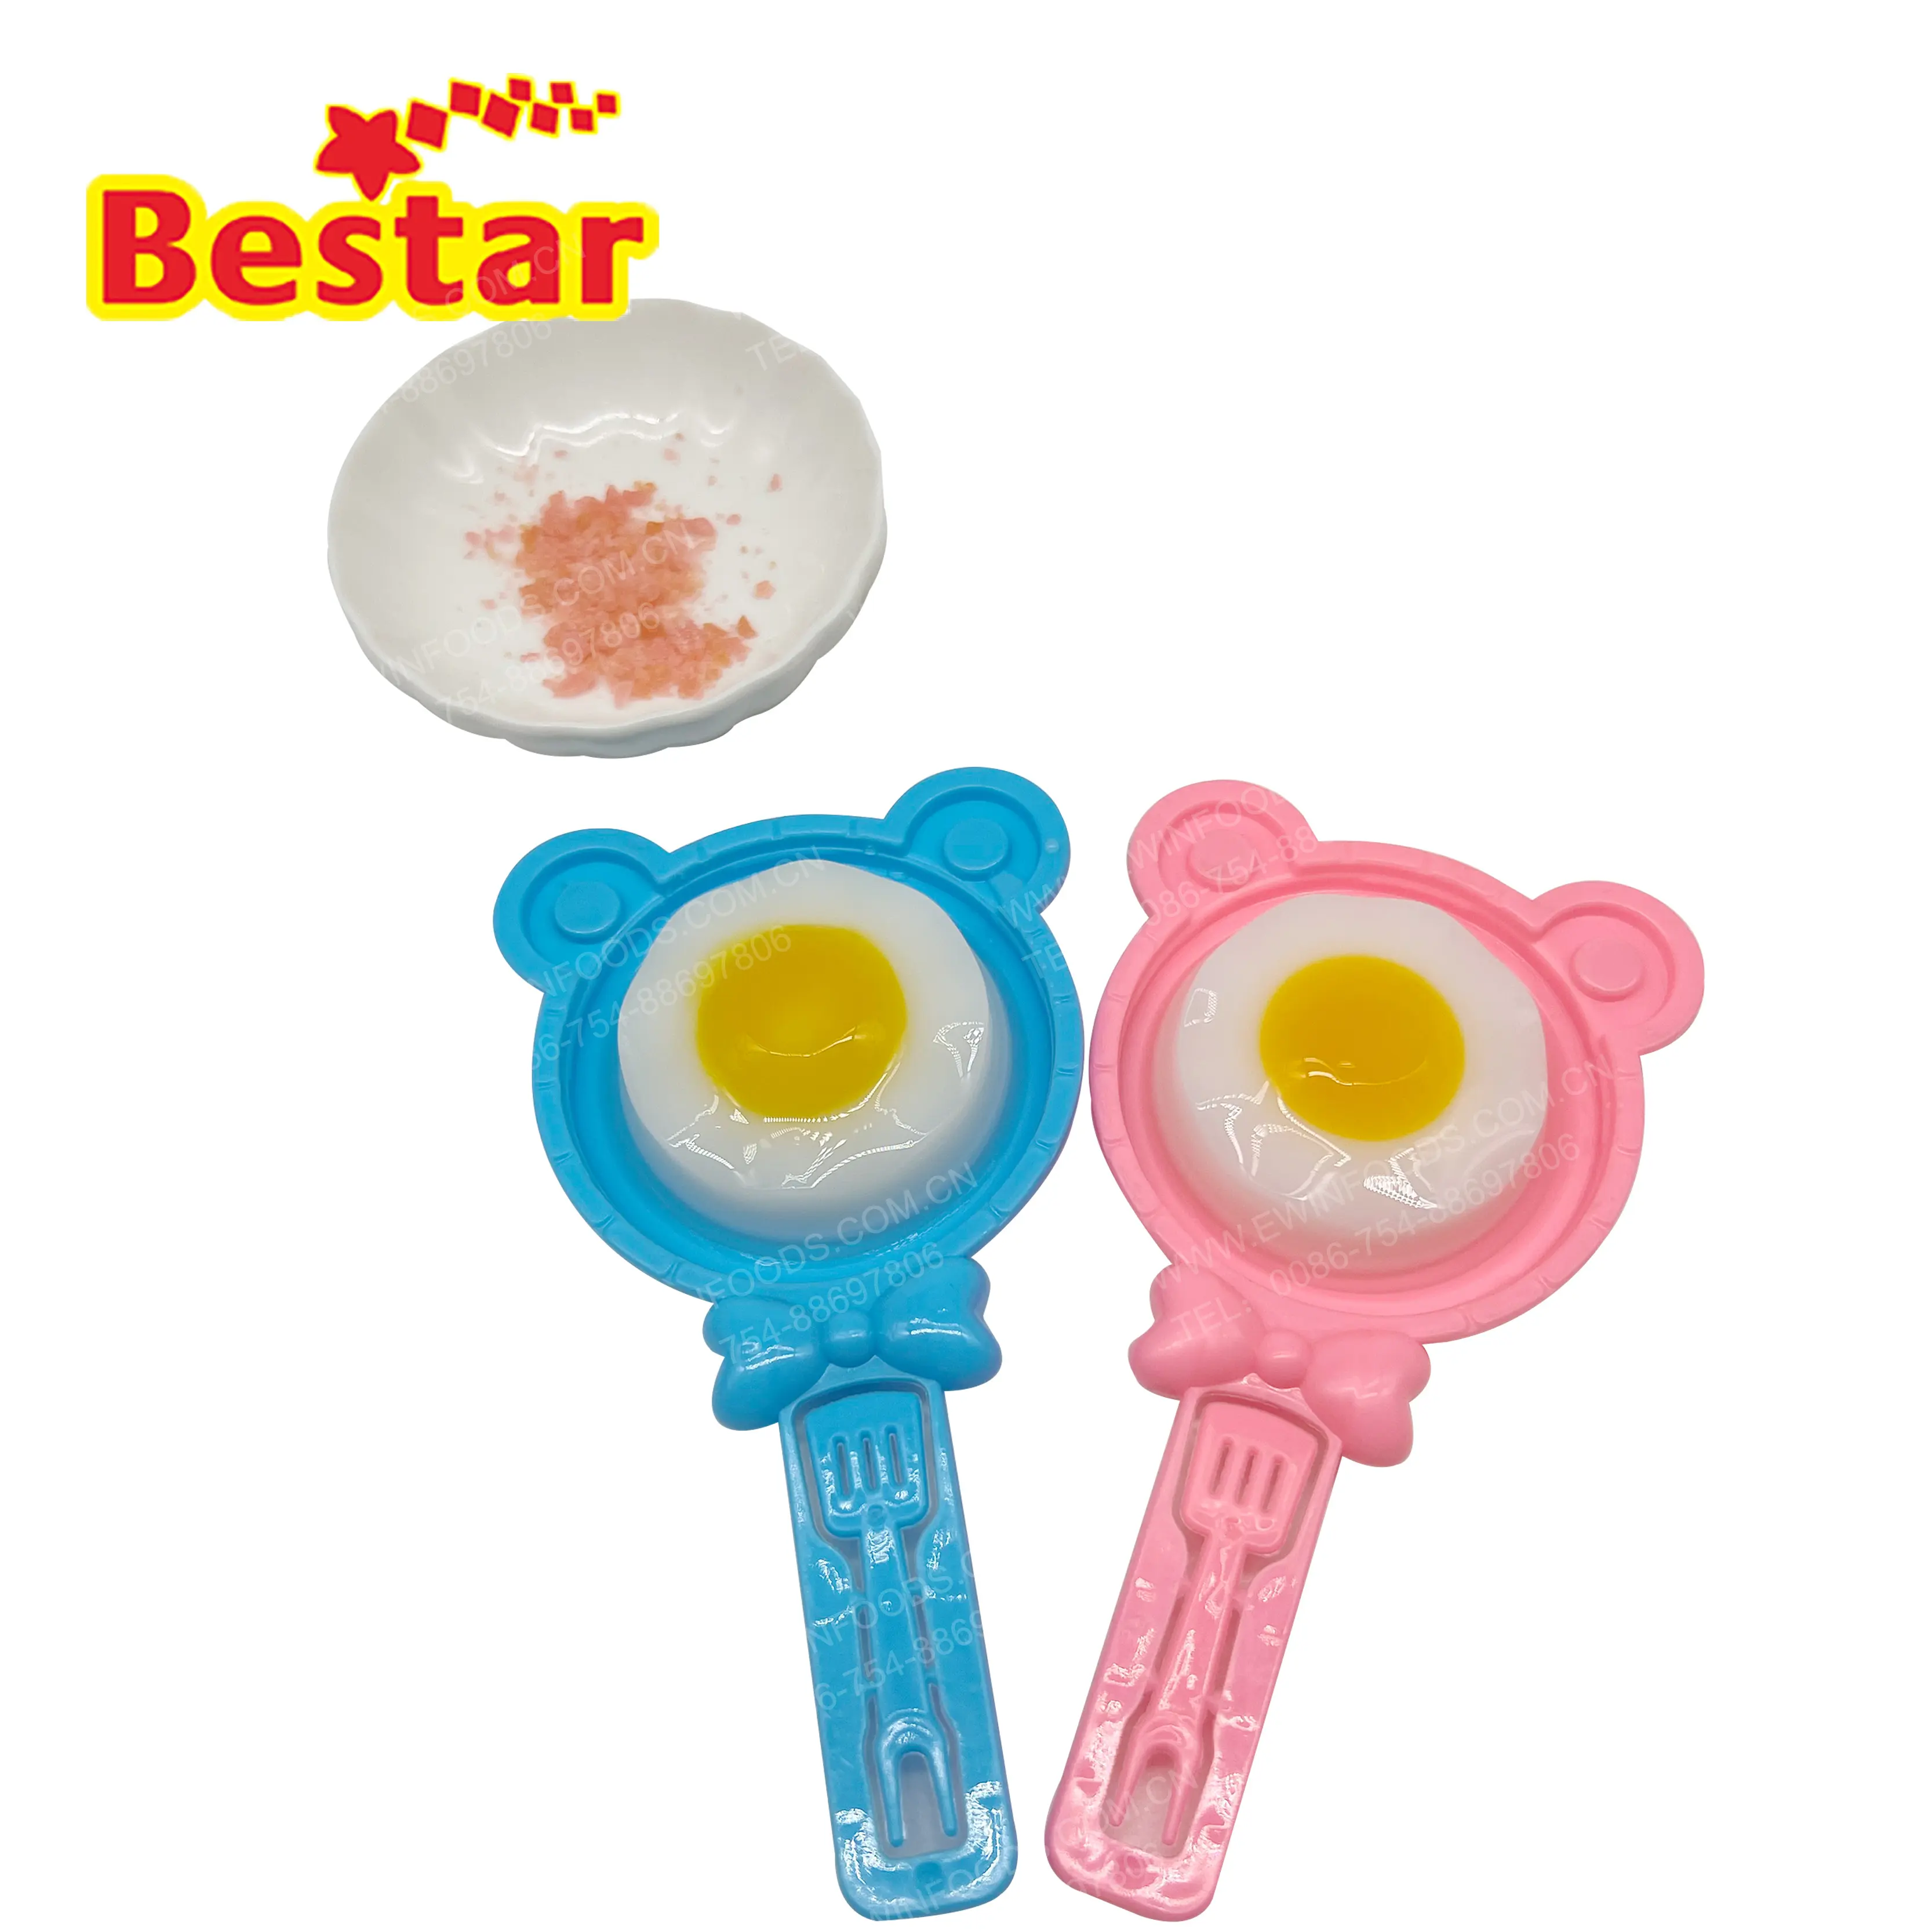 Yumurta yumuşak şeker toptan komik ayı şekli yumurta sakızlı jöle mutfak şeker oyuncaklar çocuklar için özel tasarım ve logo şeker tedarikçisi